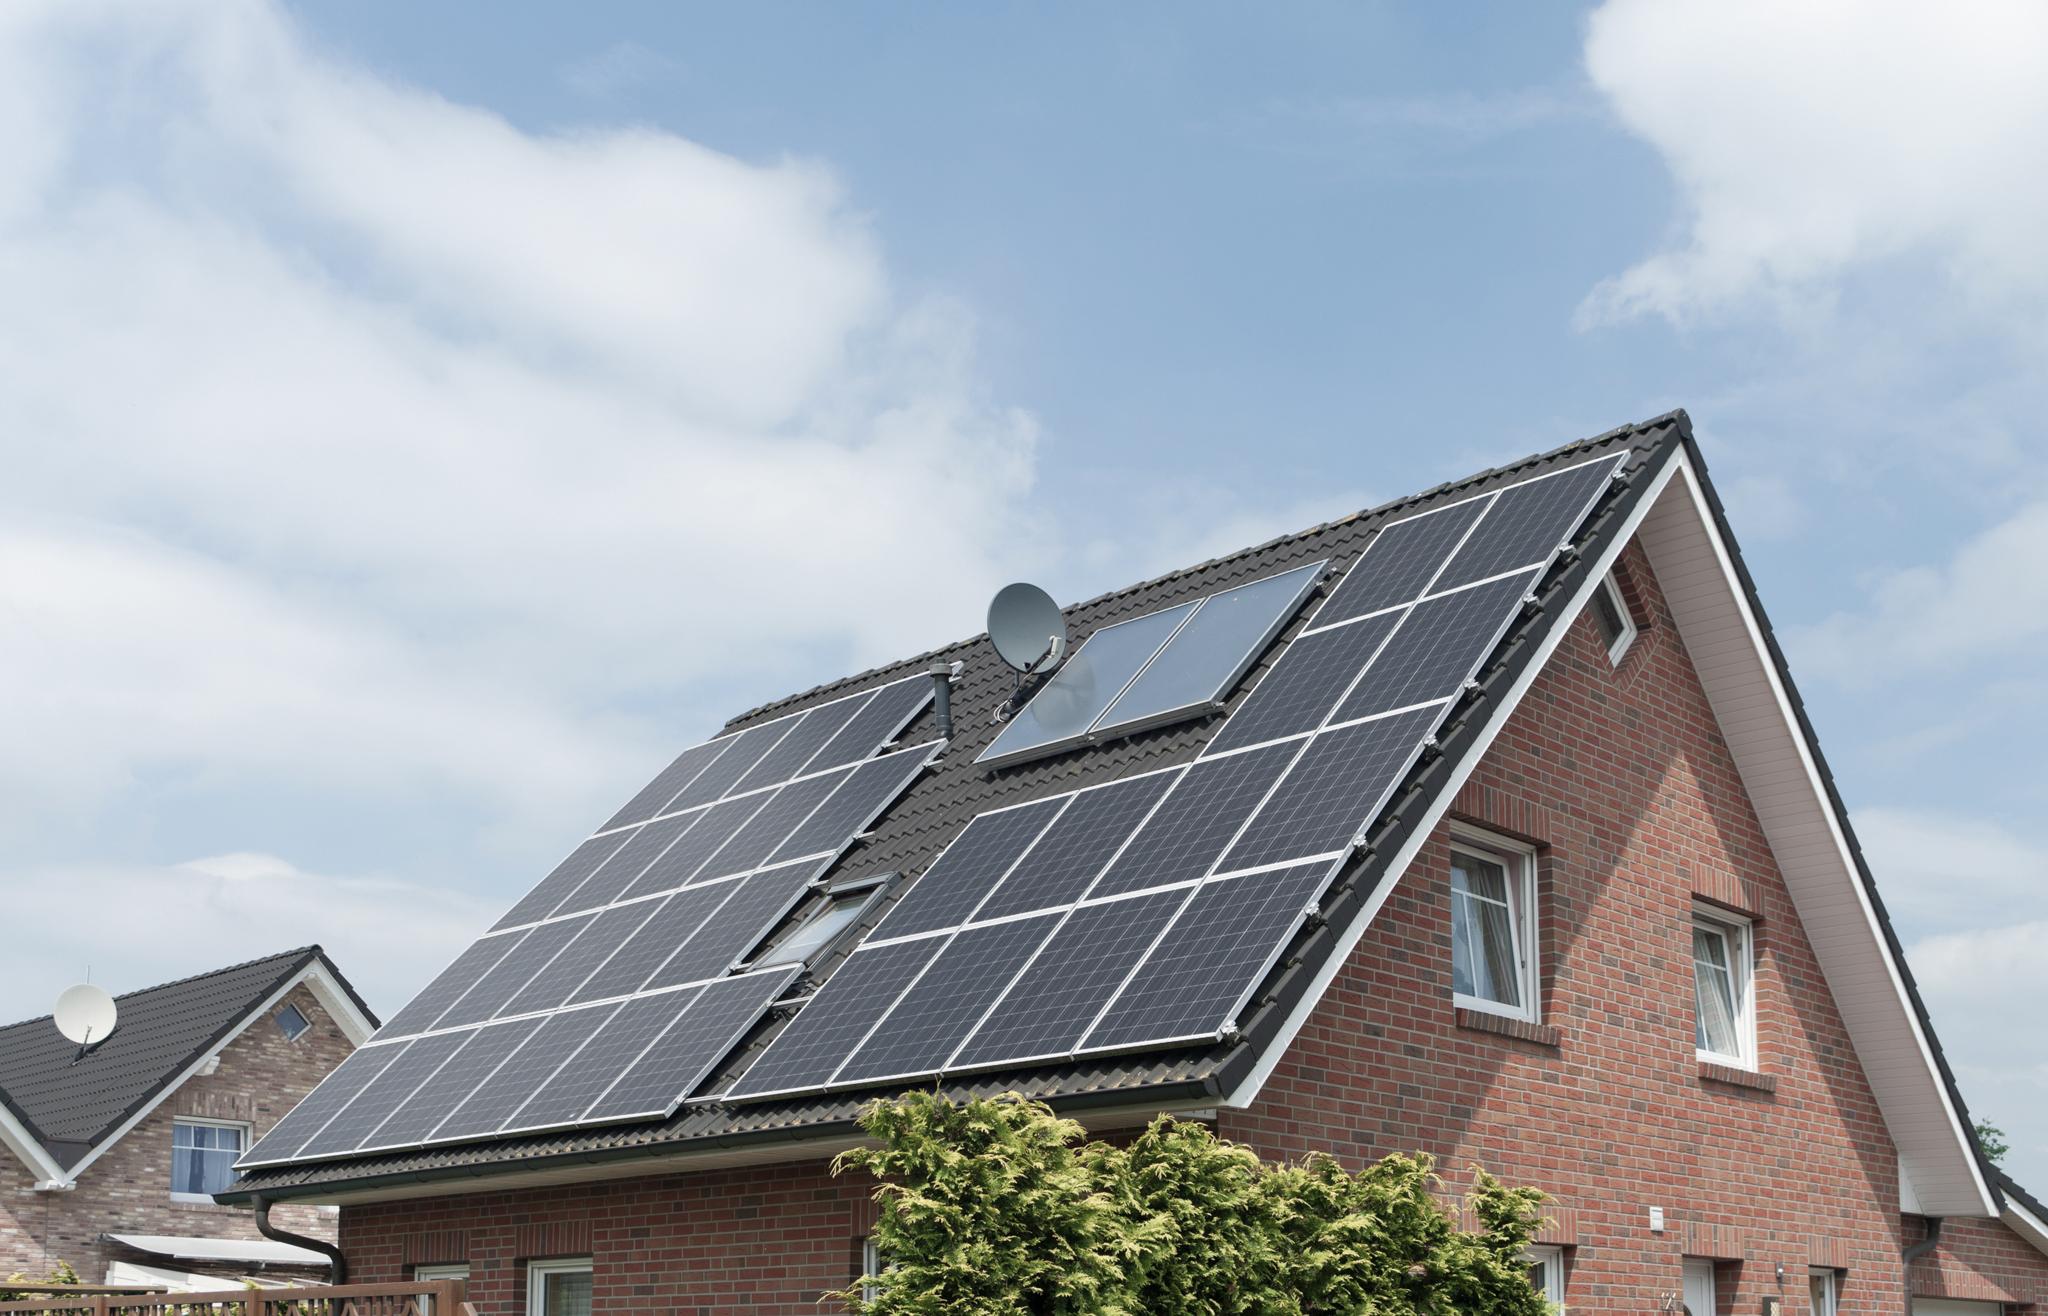 Einfamilienhaus mit zolar Solaranlage auf dem Dach - Brandgefahr Photovoltaik